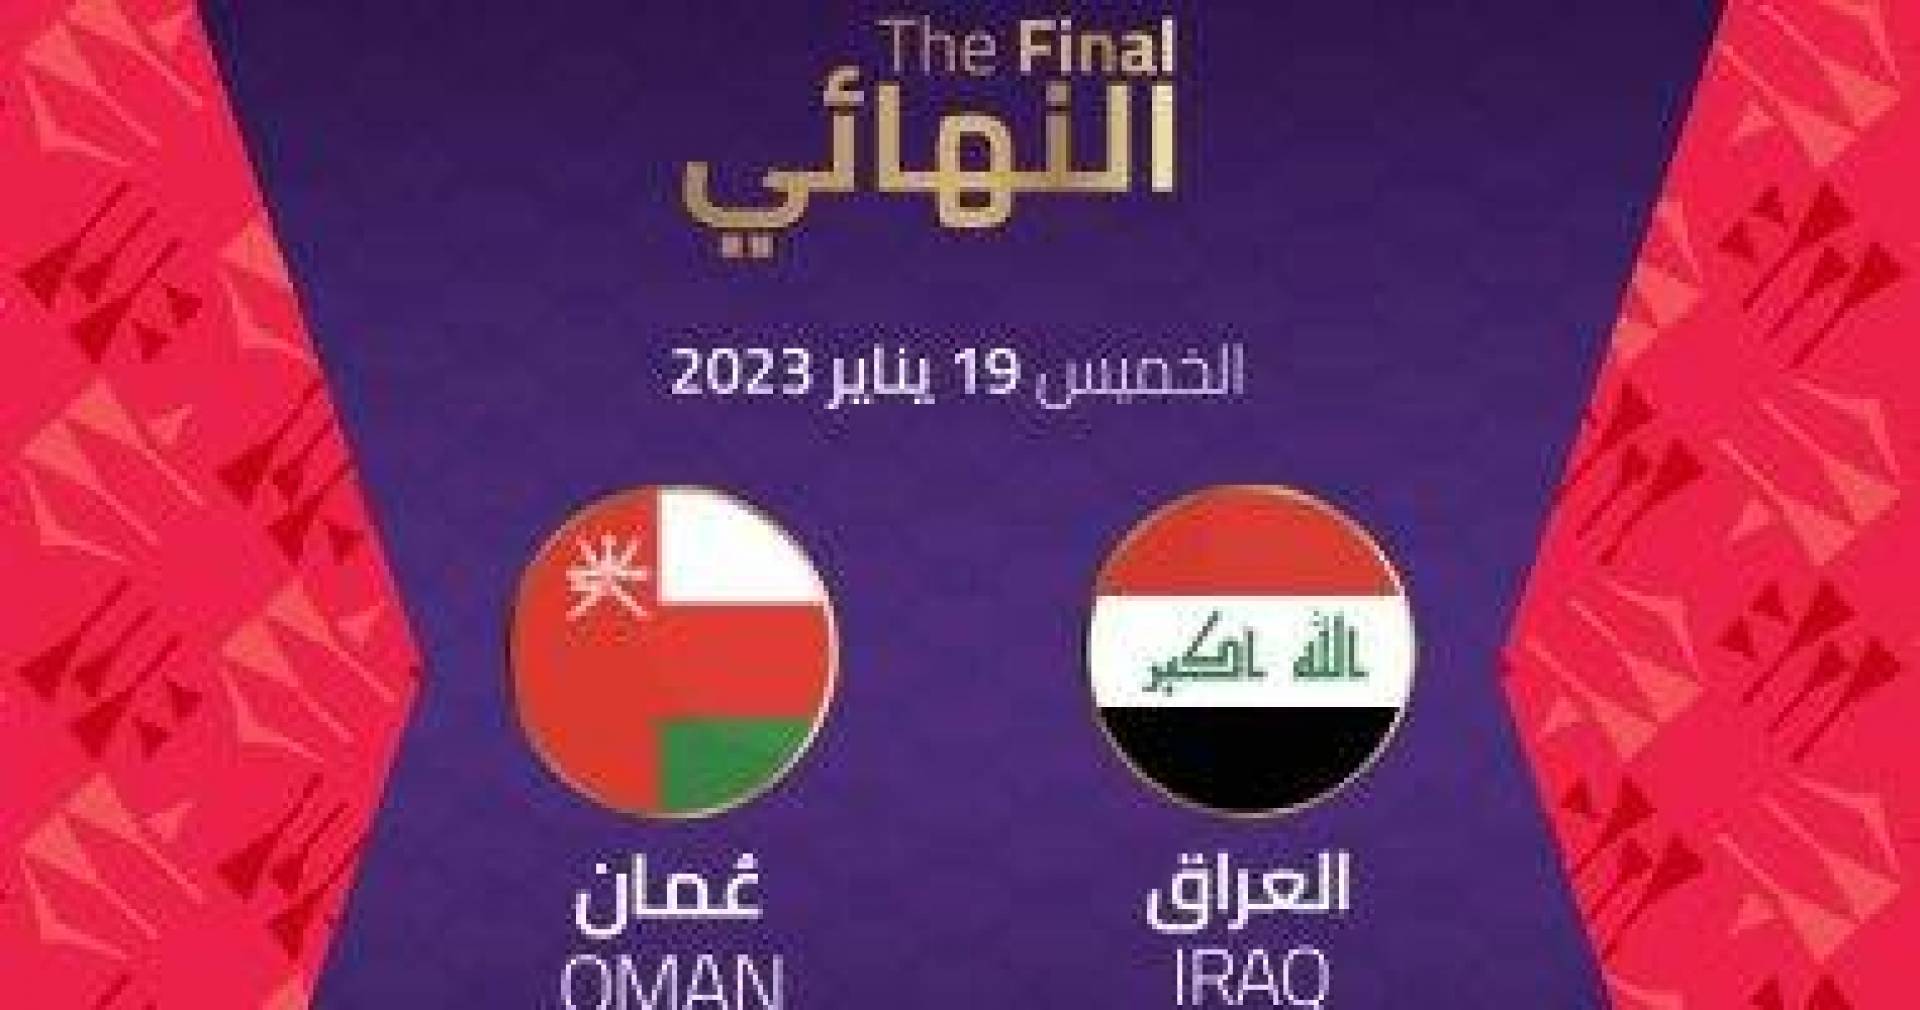 القنوات الناقلة لمباراة العراق ضد عمان في نهائي كأس الخليج العربي 